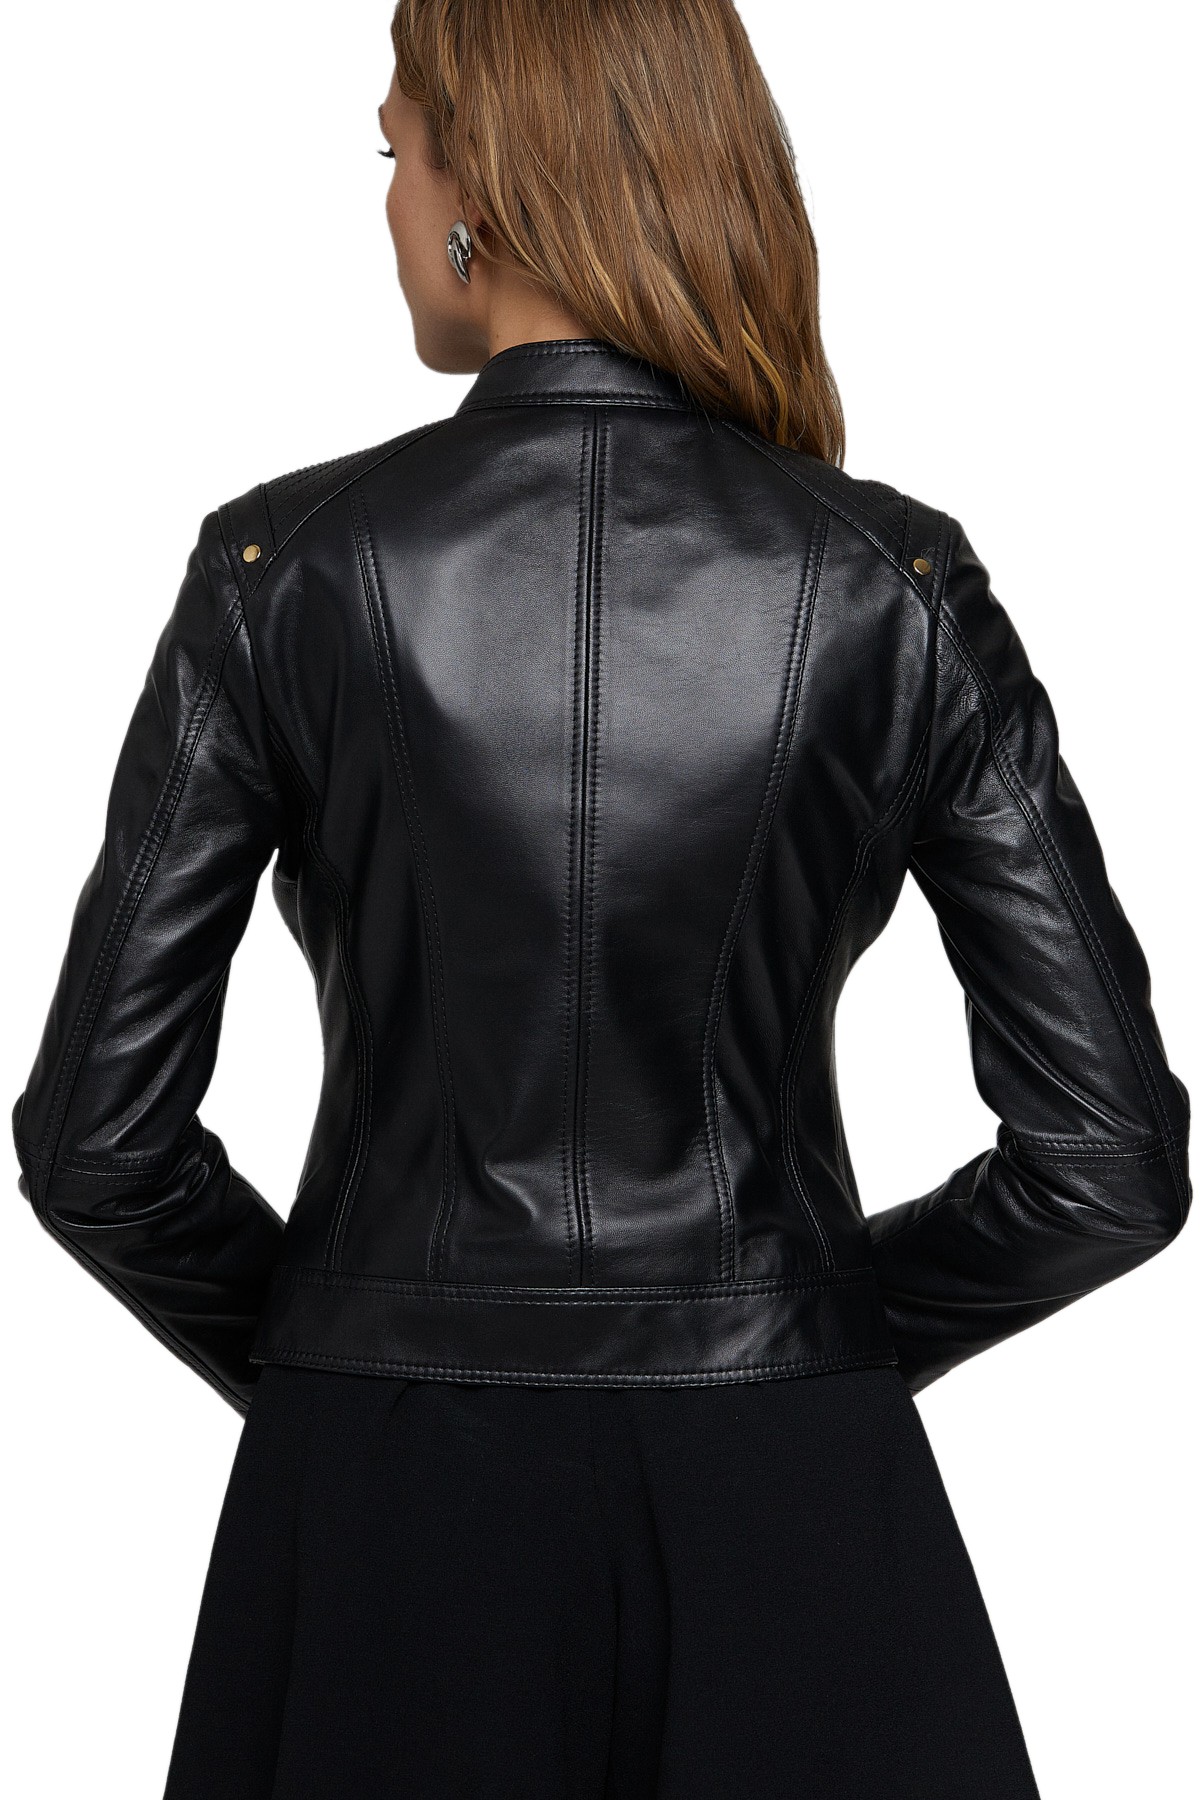 Chrissy Teigen Women's 100 % Real Black Leather Biker Jacket